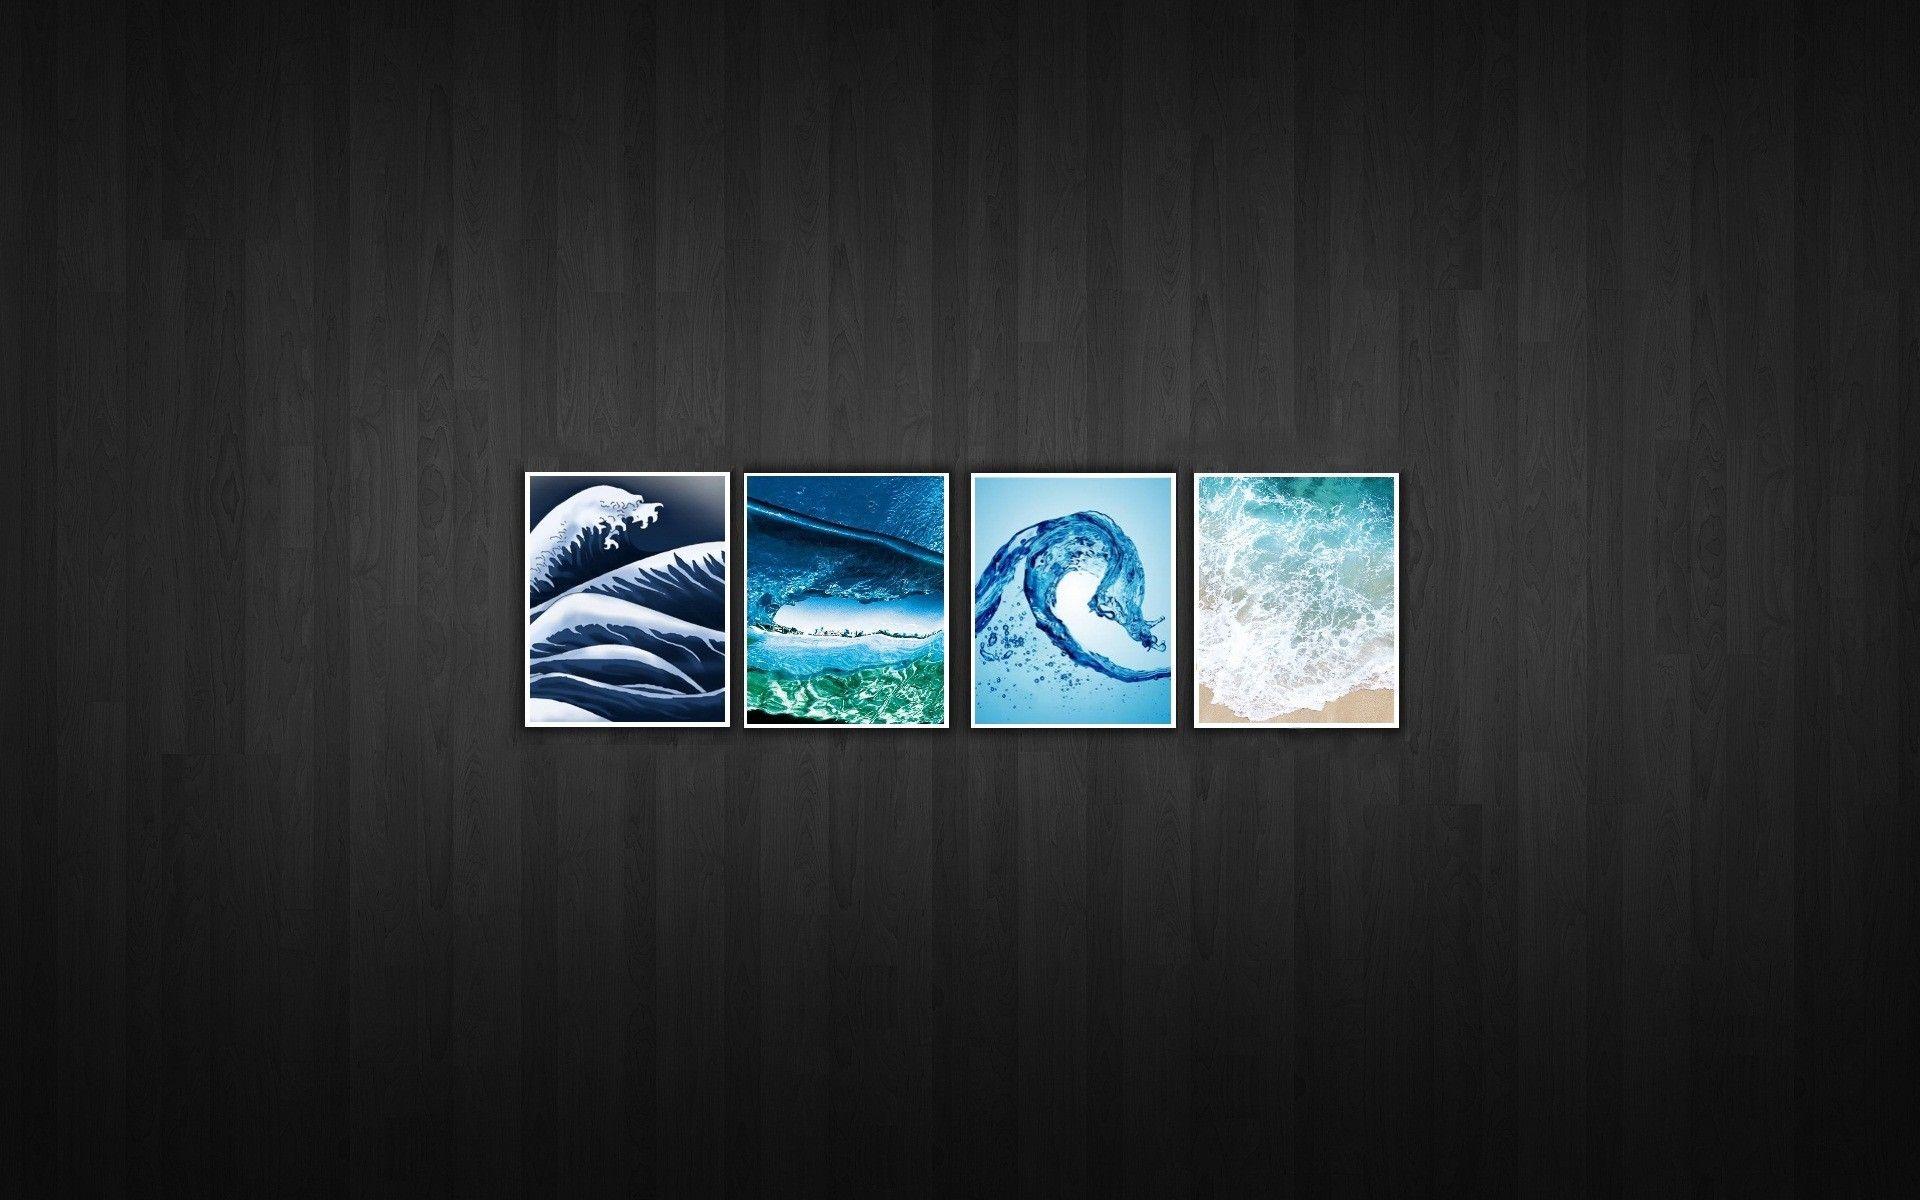 Four elements wallpaper. PC